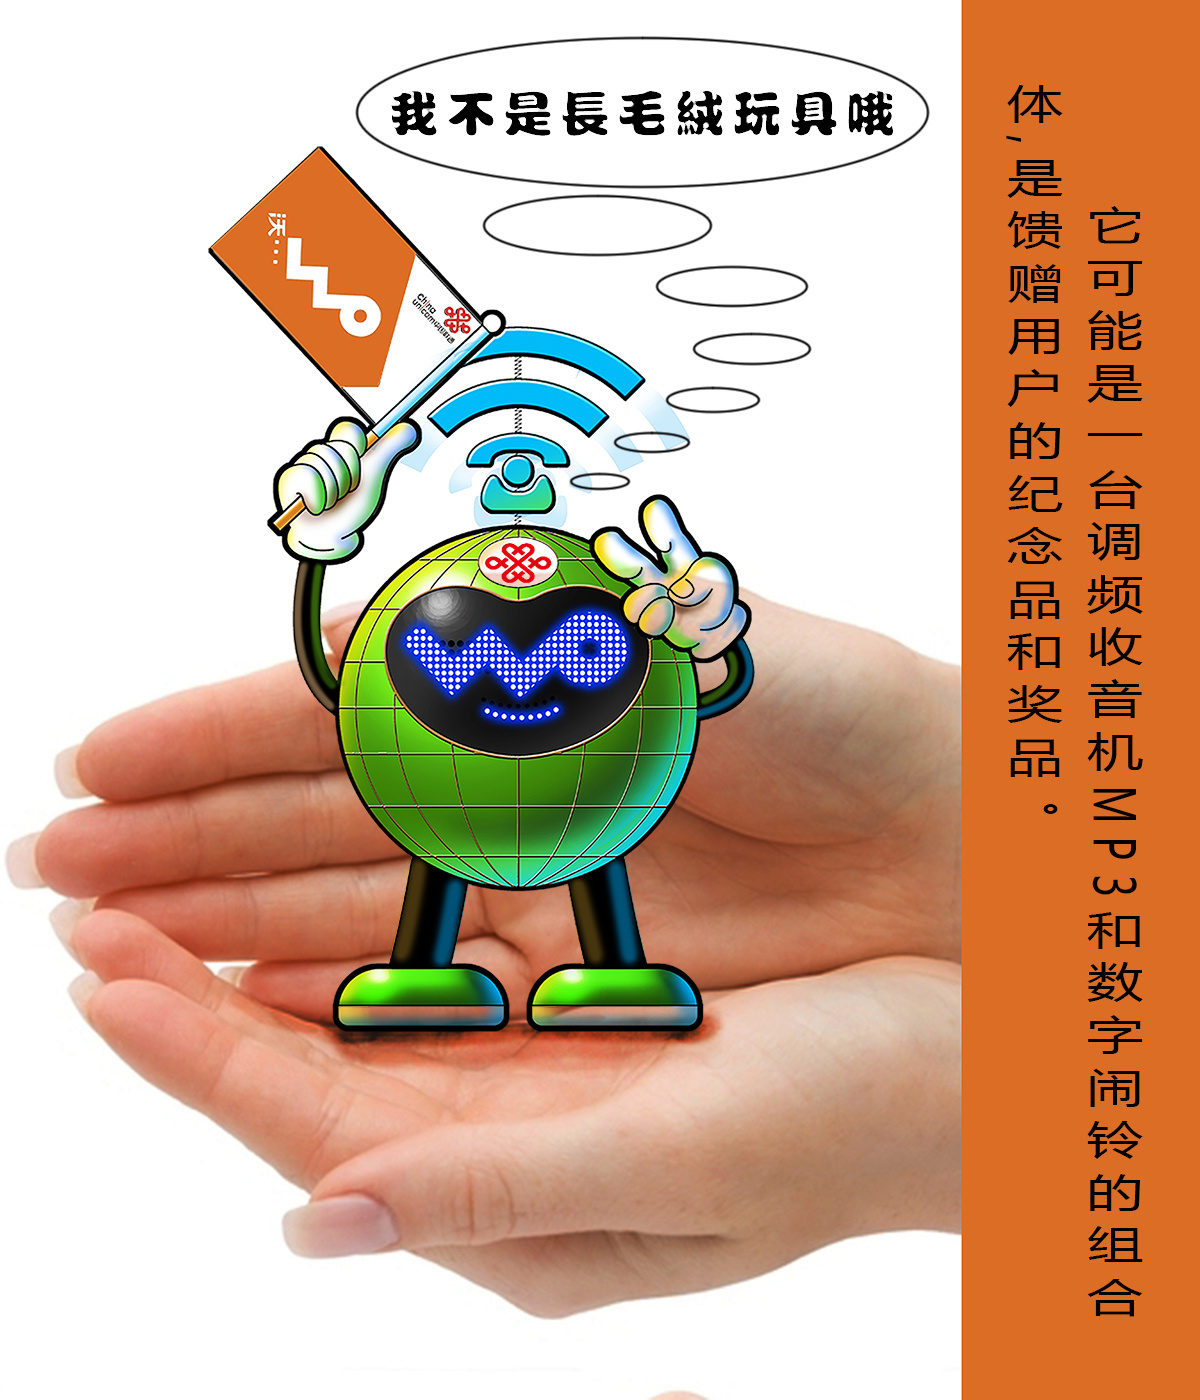 中国联通吉祥物图片